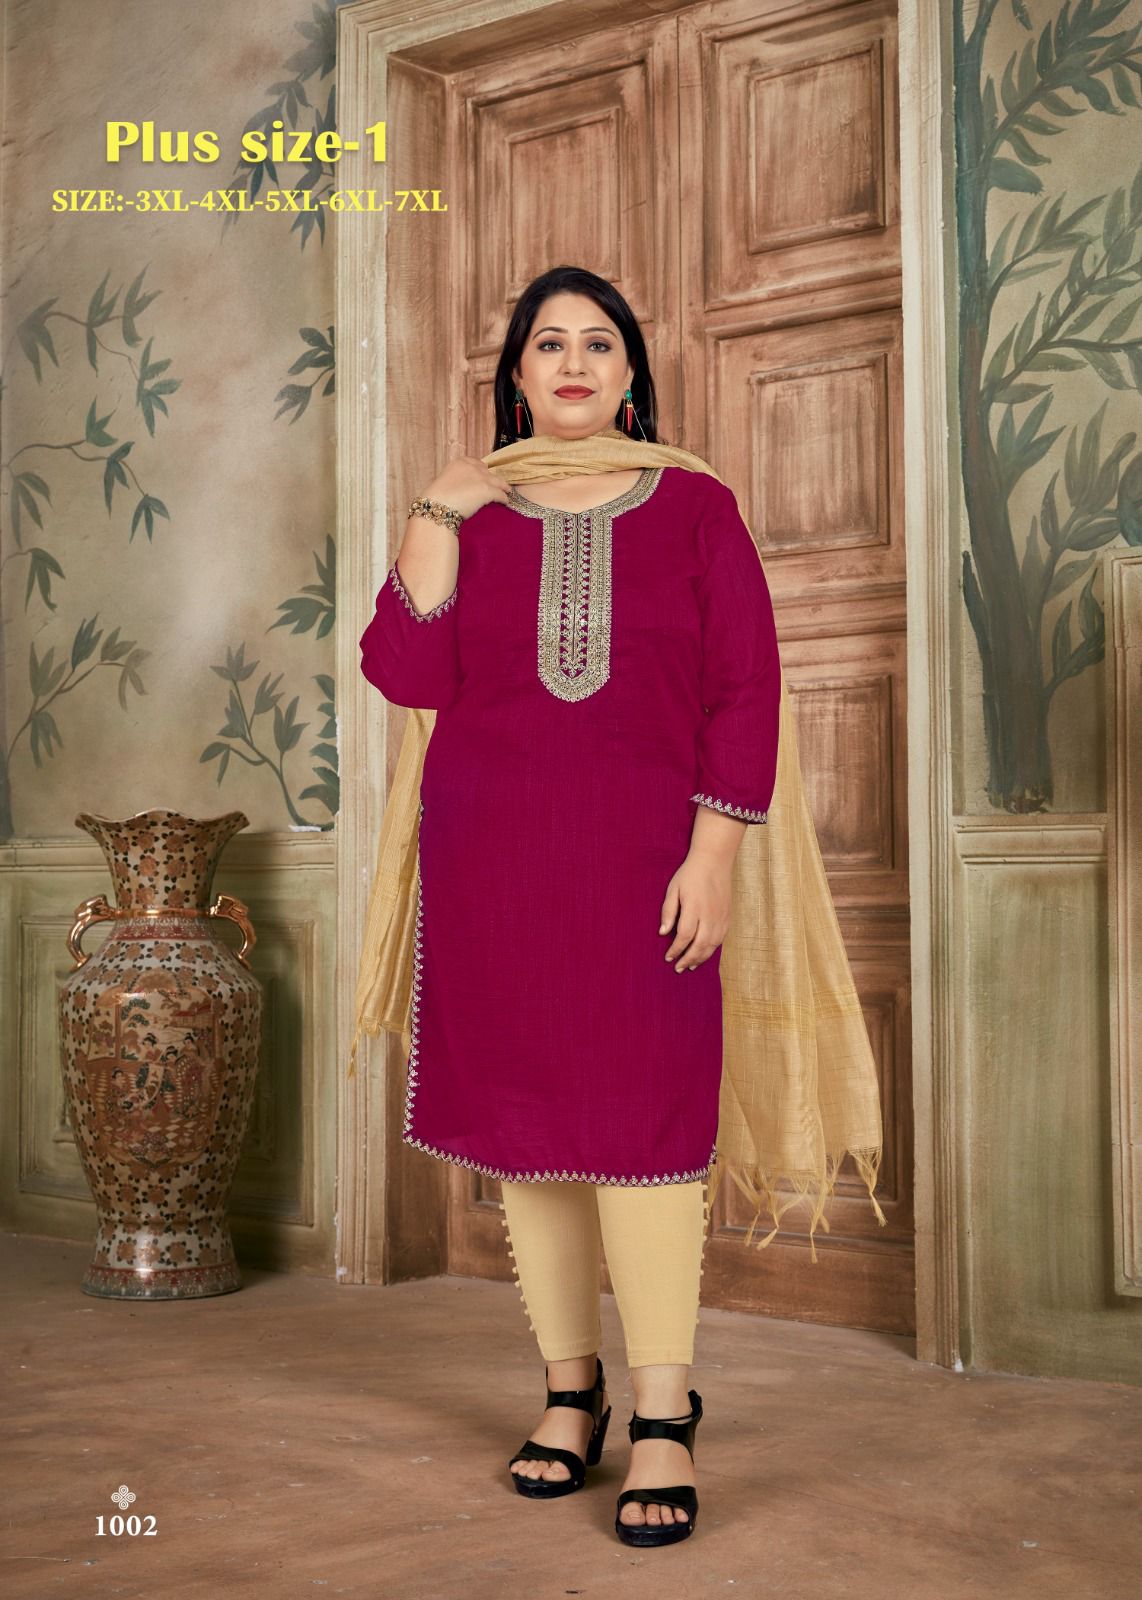 Ethnic Wear - 4XL - Women - 29 products | FASHIOLA INDIA